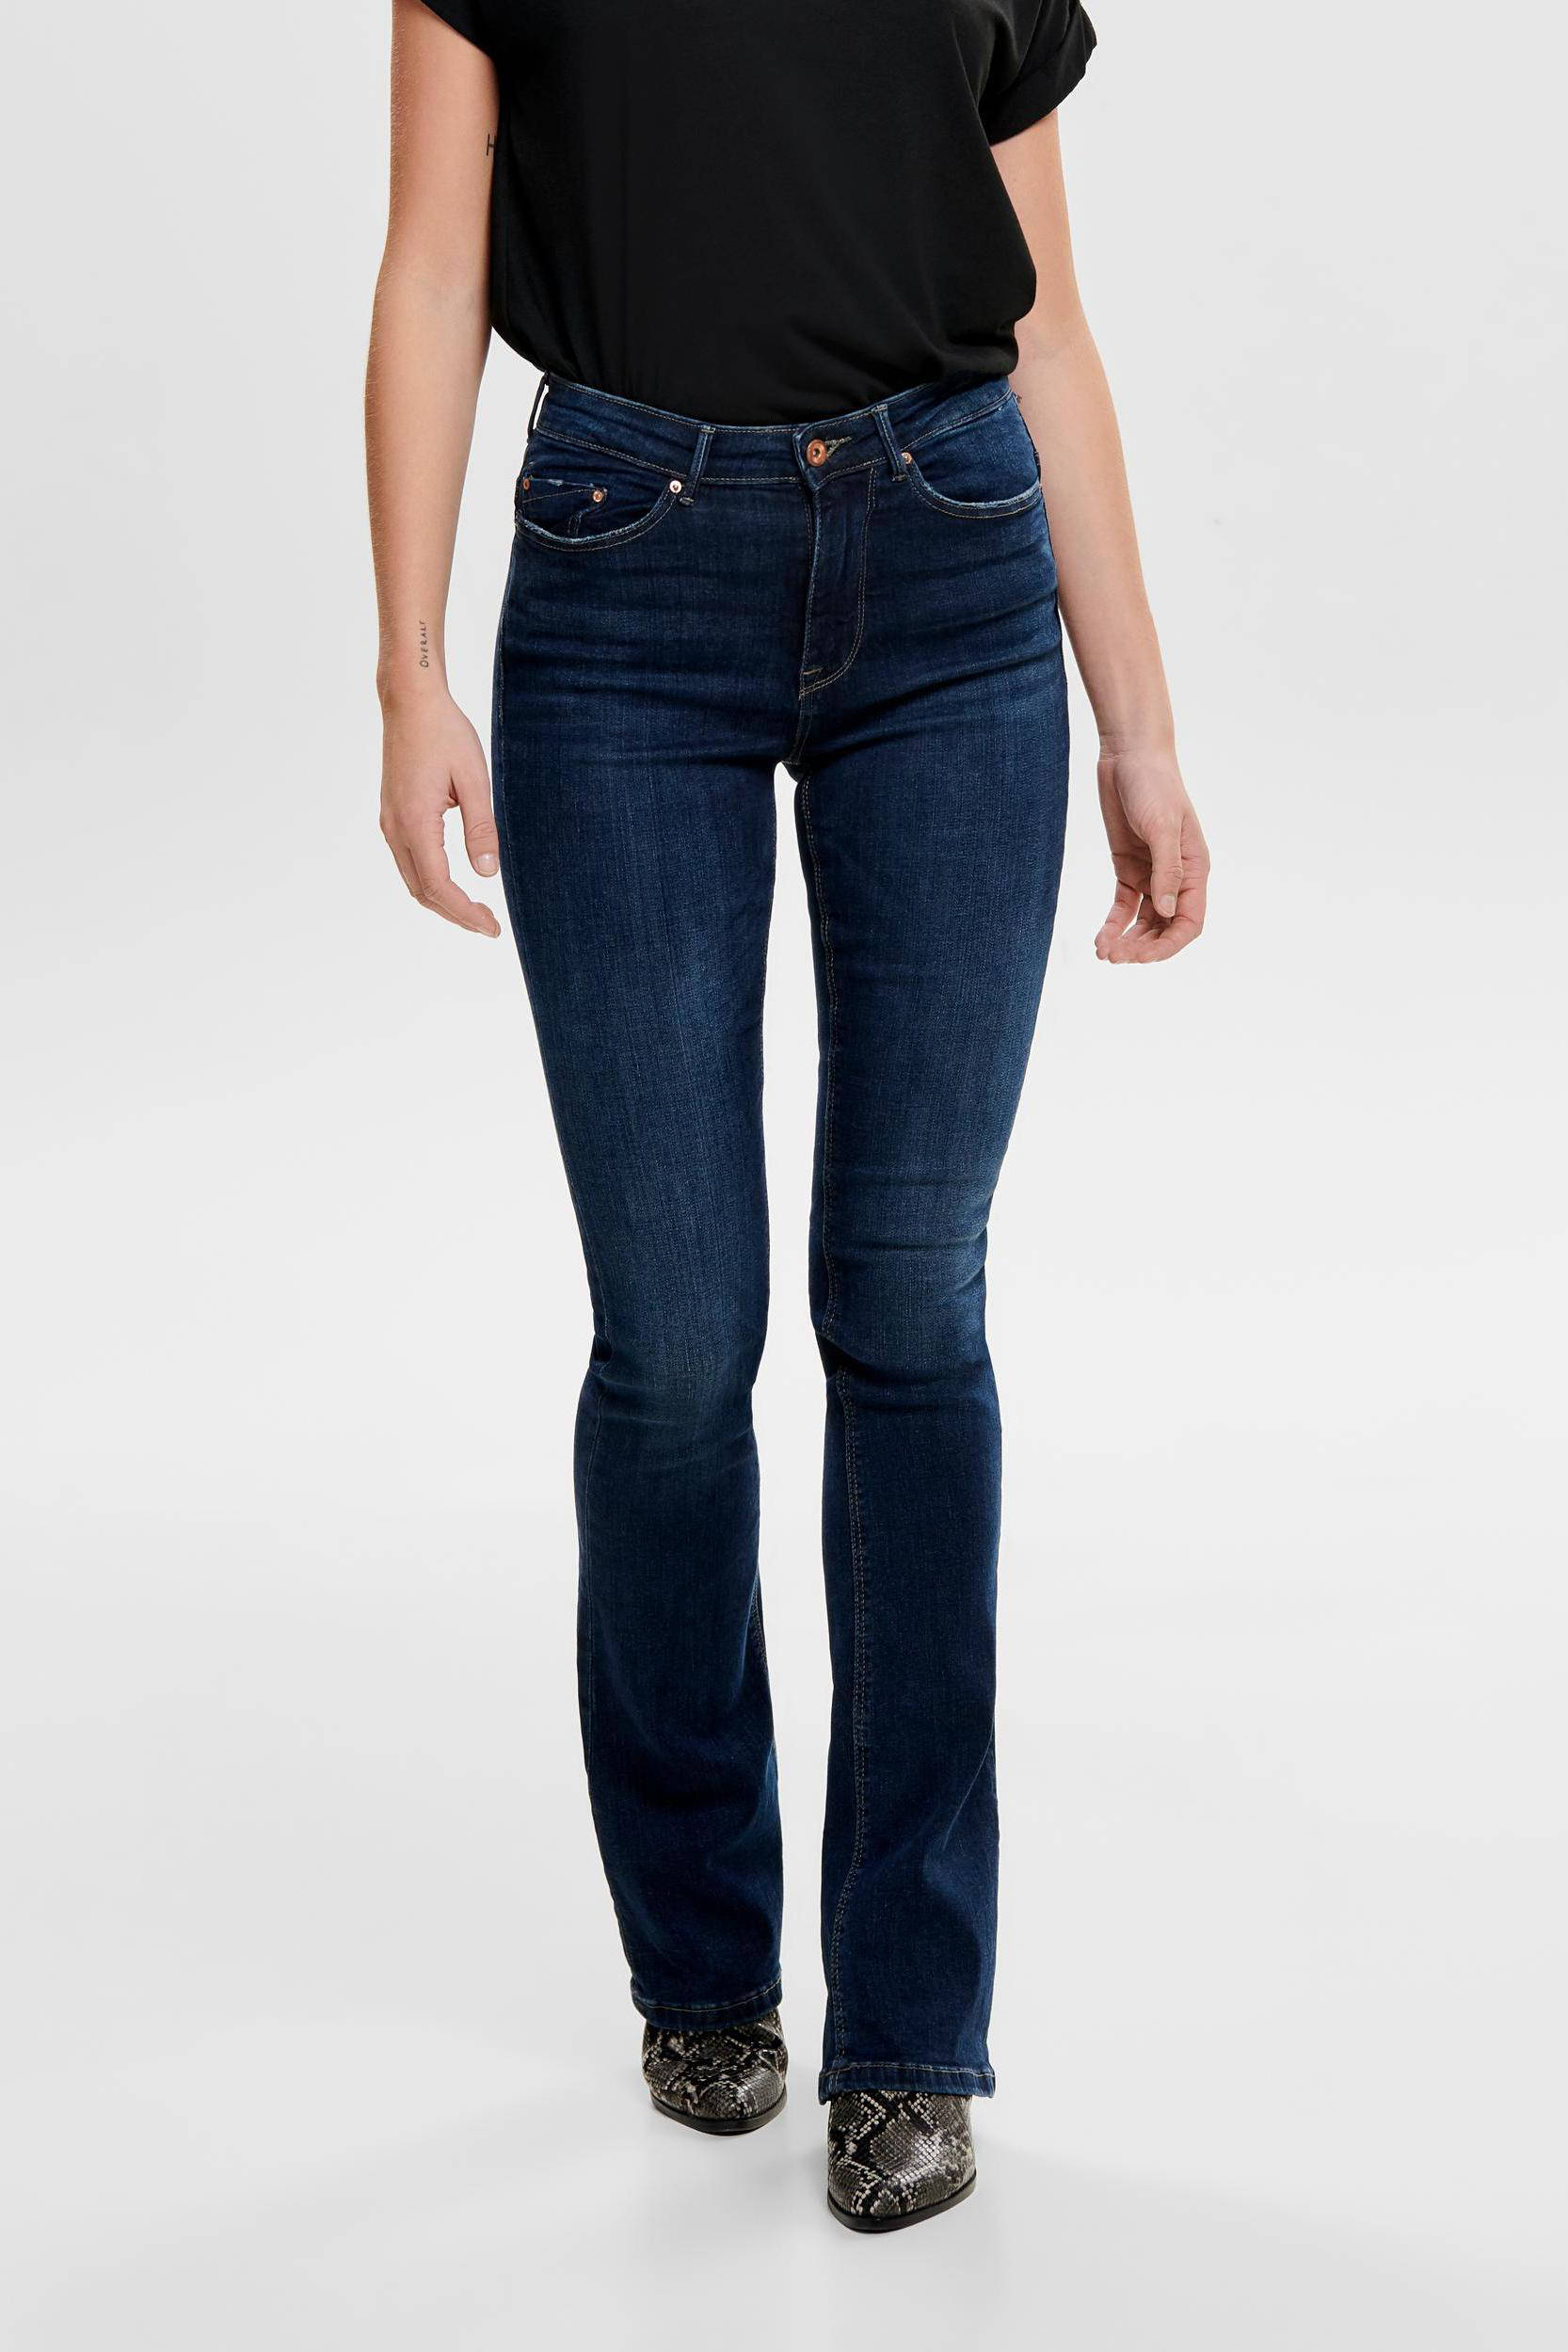 wehkamp Dames Kleding Broeken & Jeans Jeans High Waisted Jeans High waist skinny broek met dierenprint zwart 